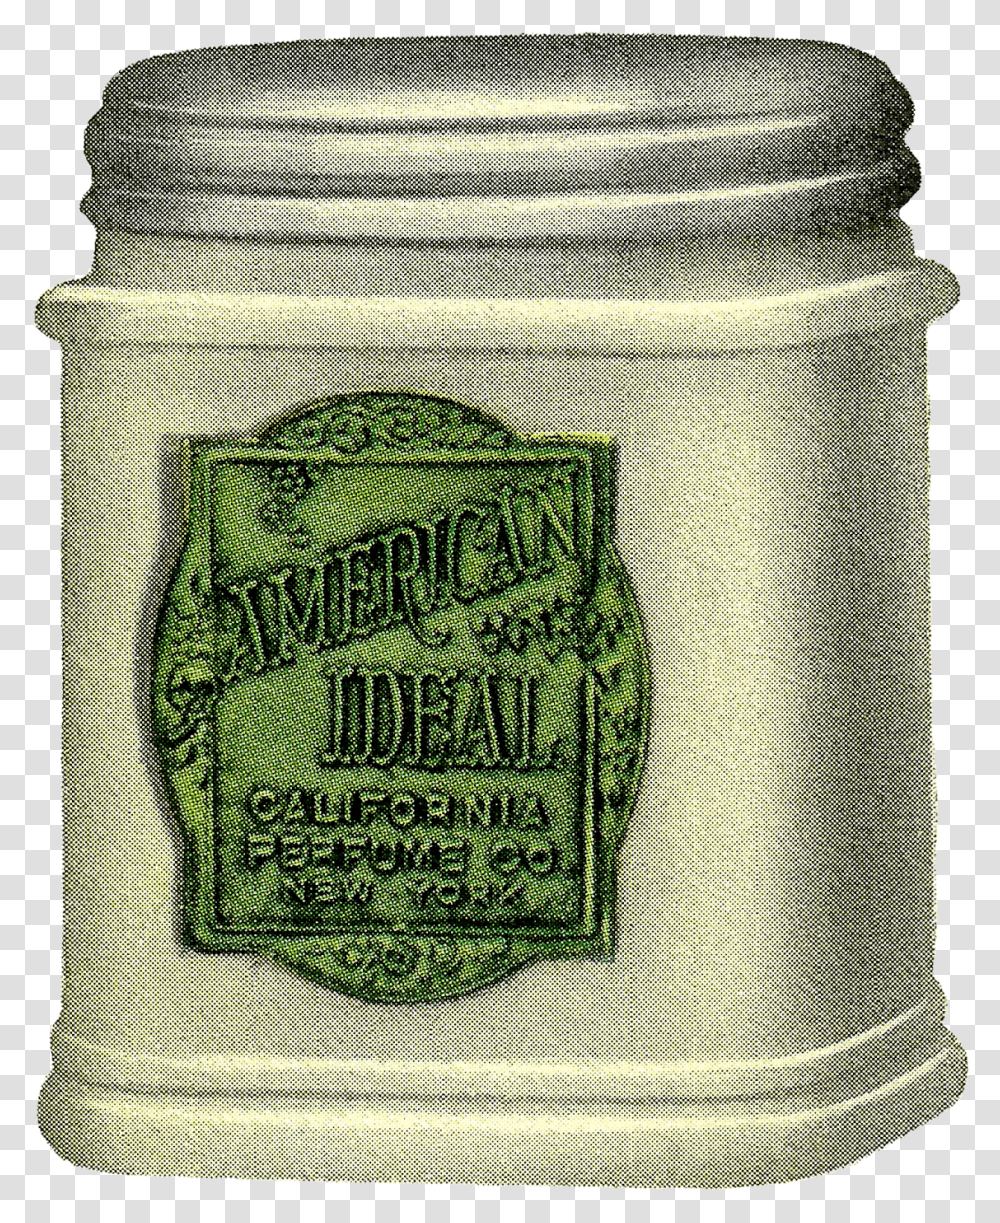 Vintage Beauty Product Digital Download Image Vintage Face Cream, Tin, Can, Sack, Bag Transparent Png